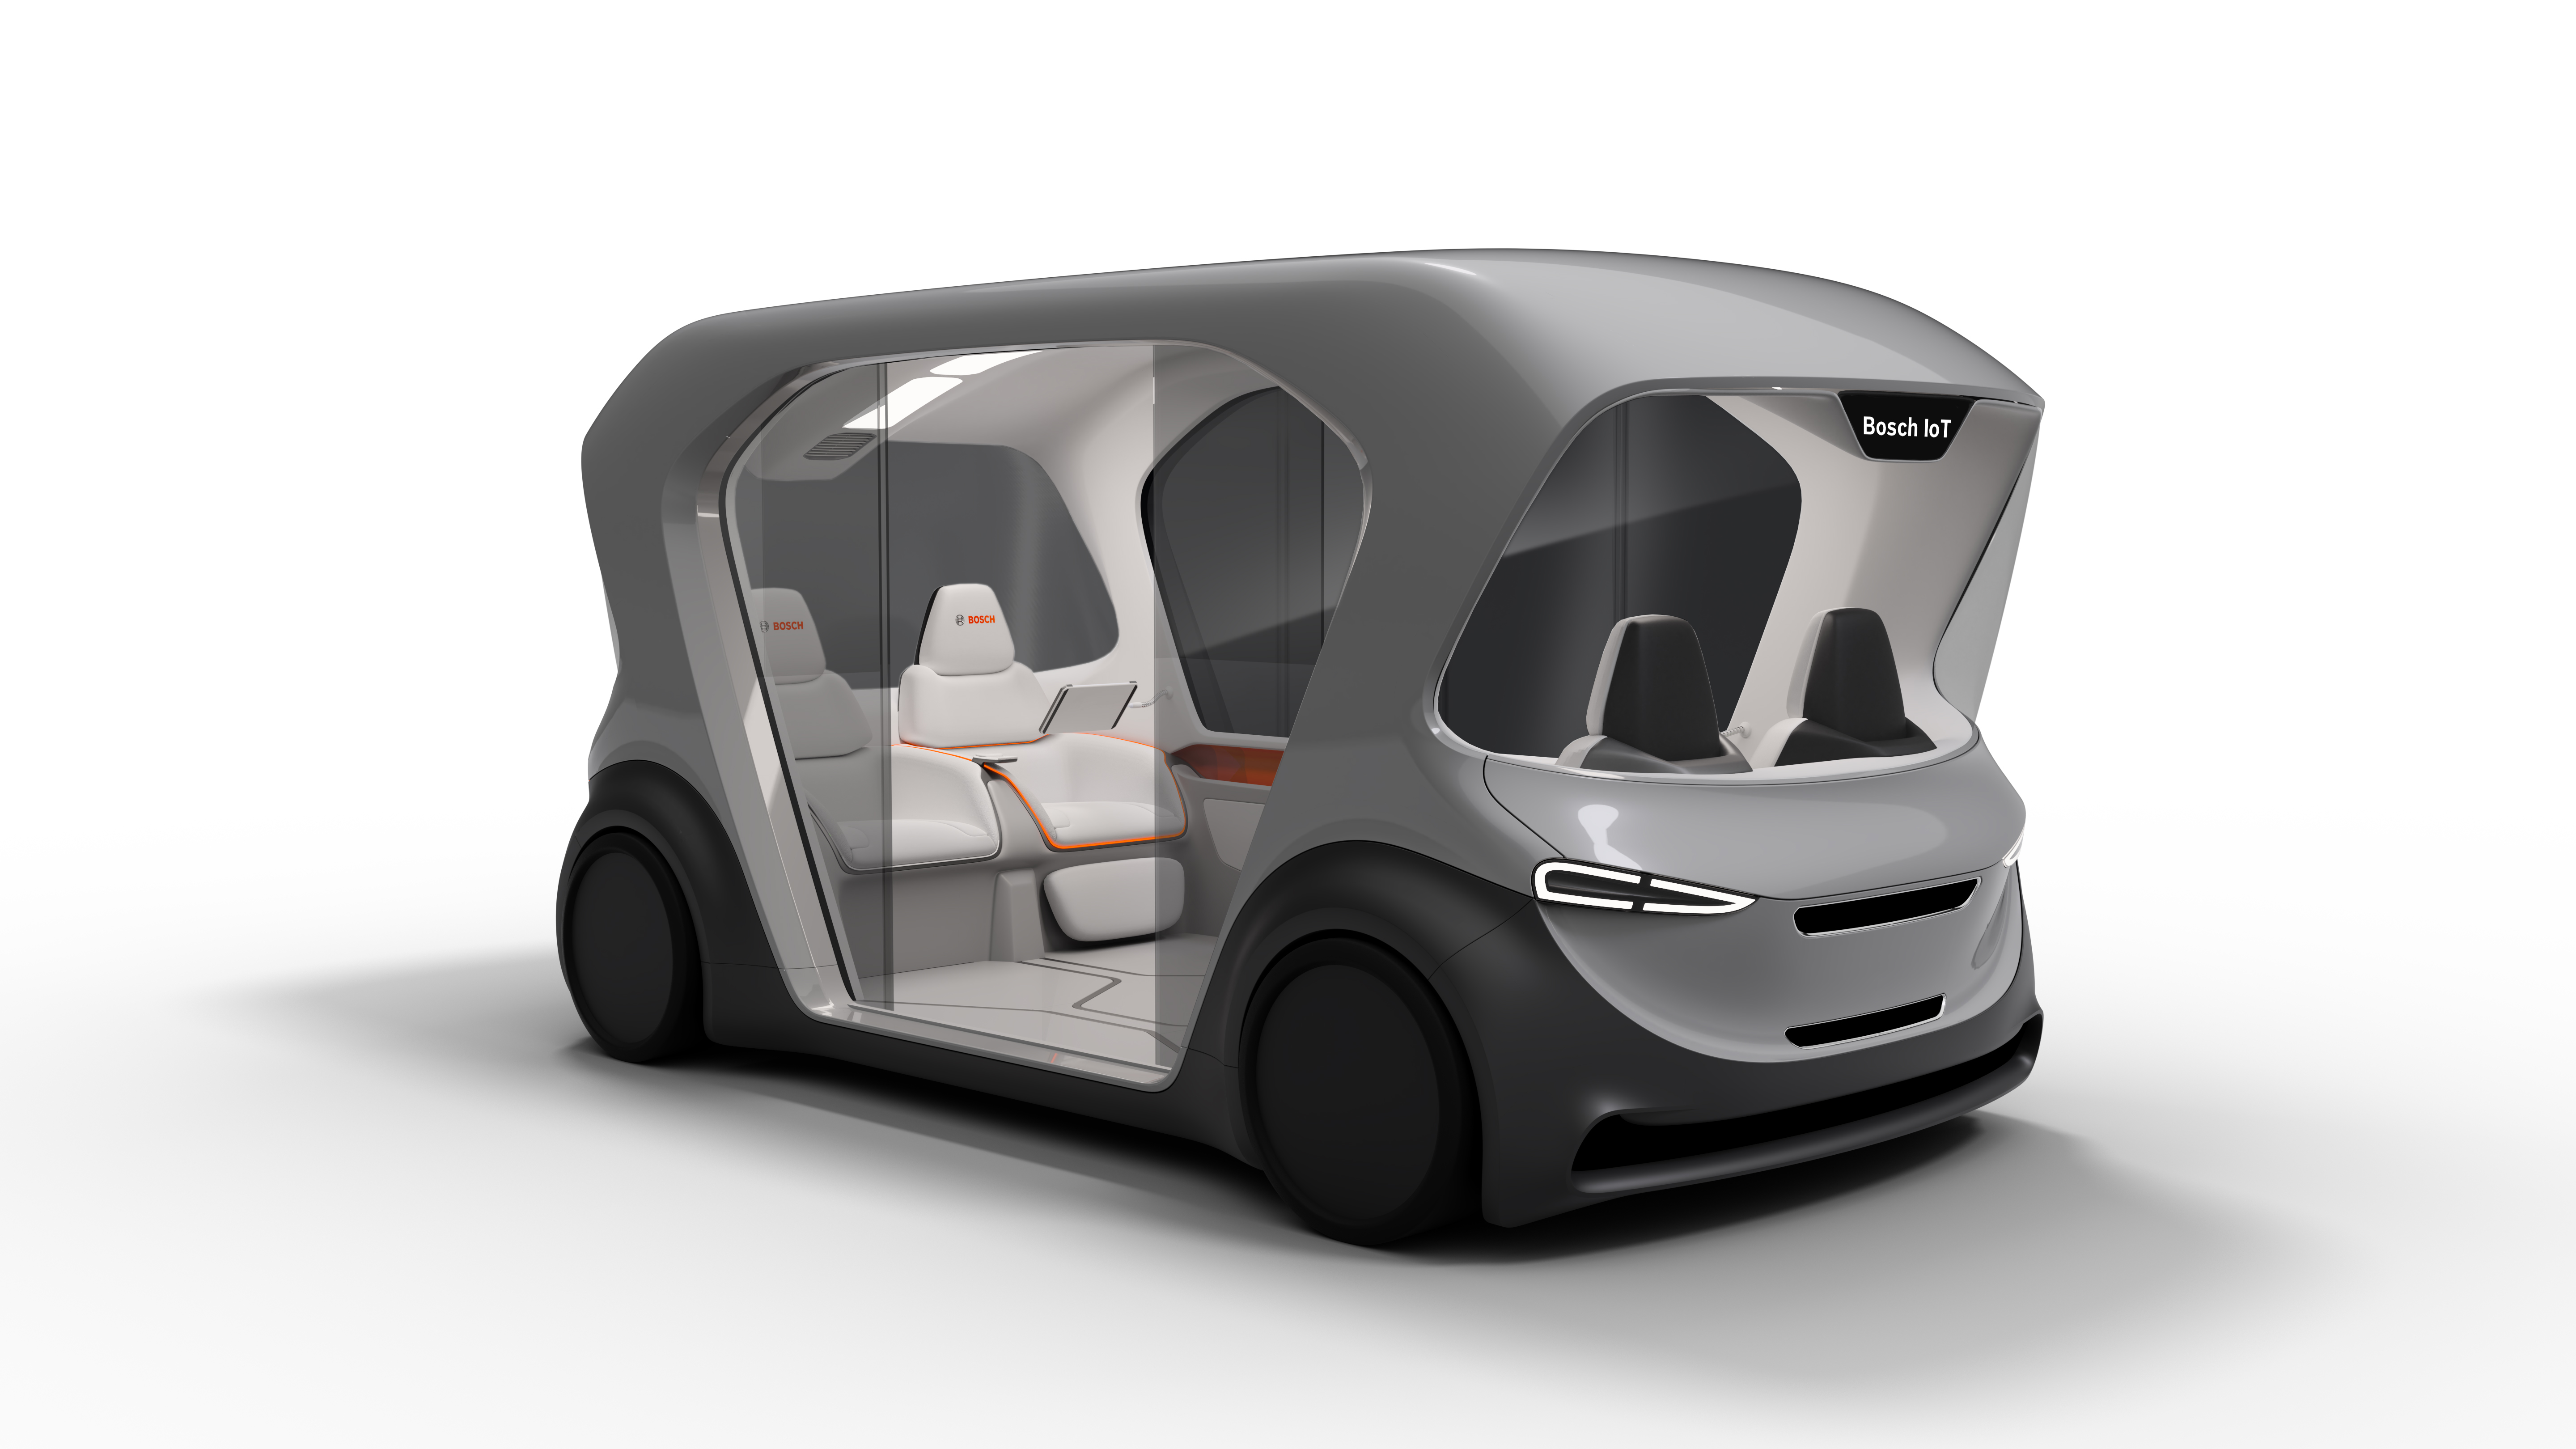 Debut nového konceptu vozidla kyvadlové dopravy na CES 2019 v Las Vegas